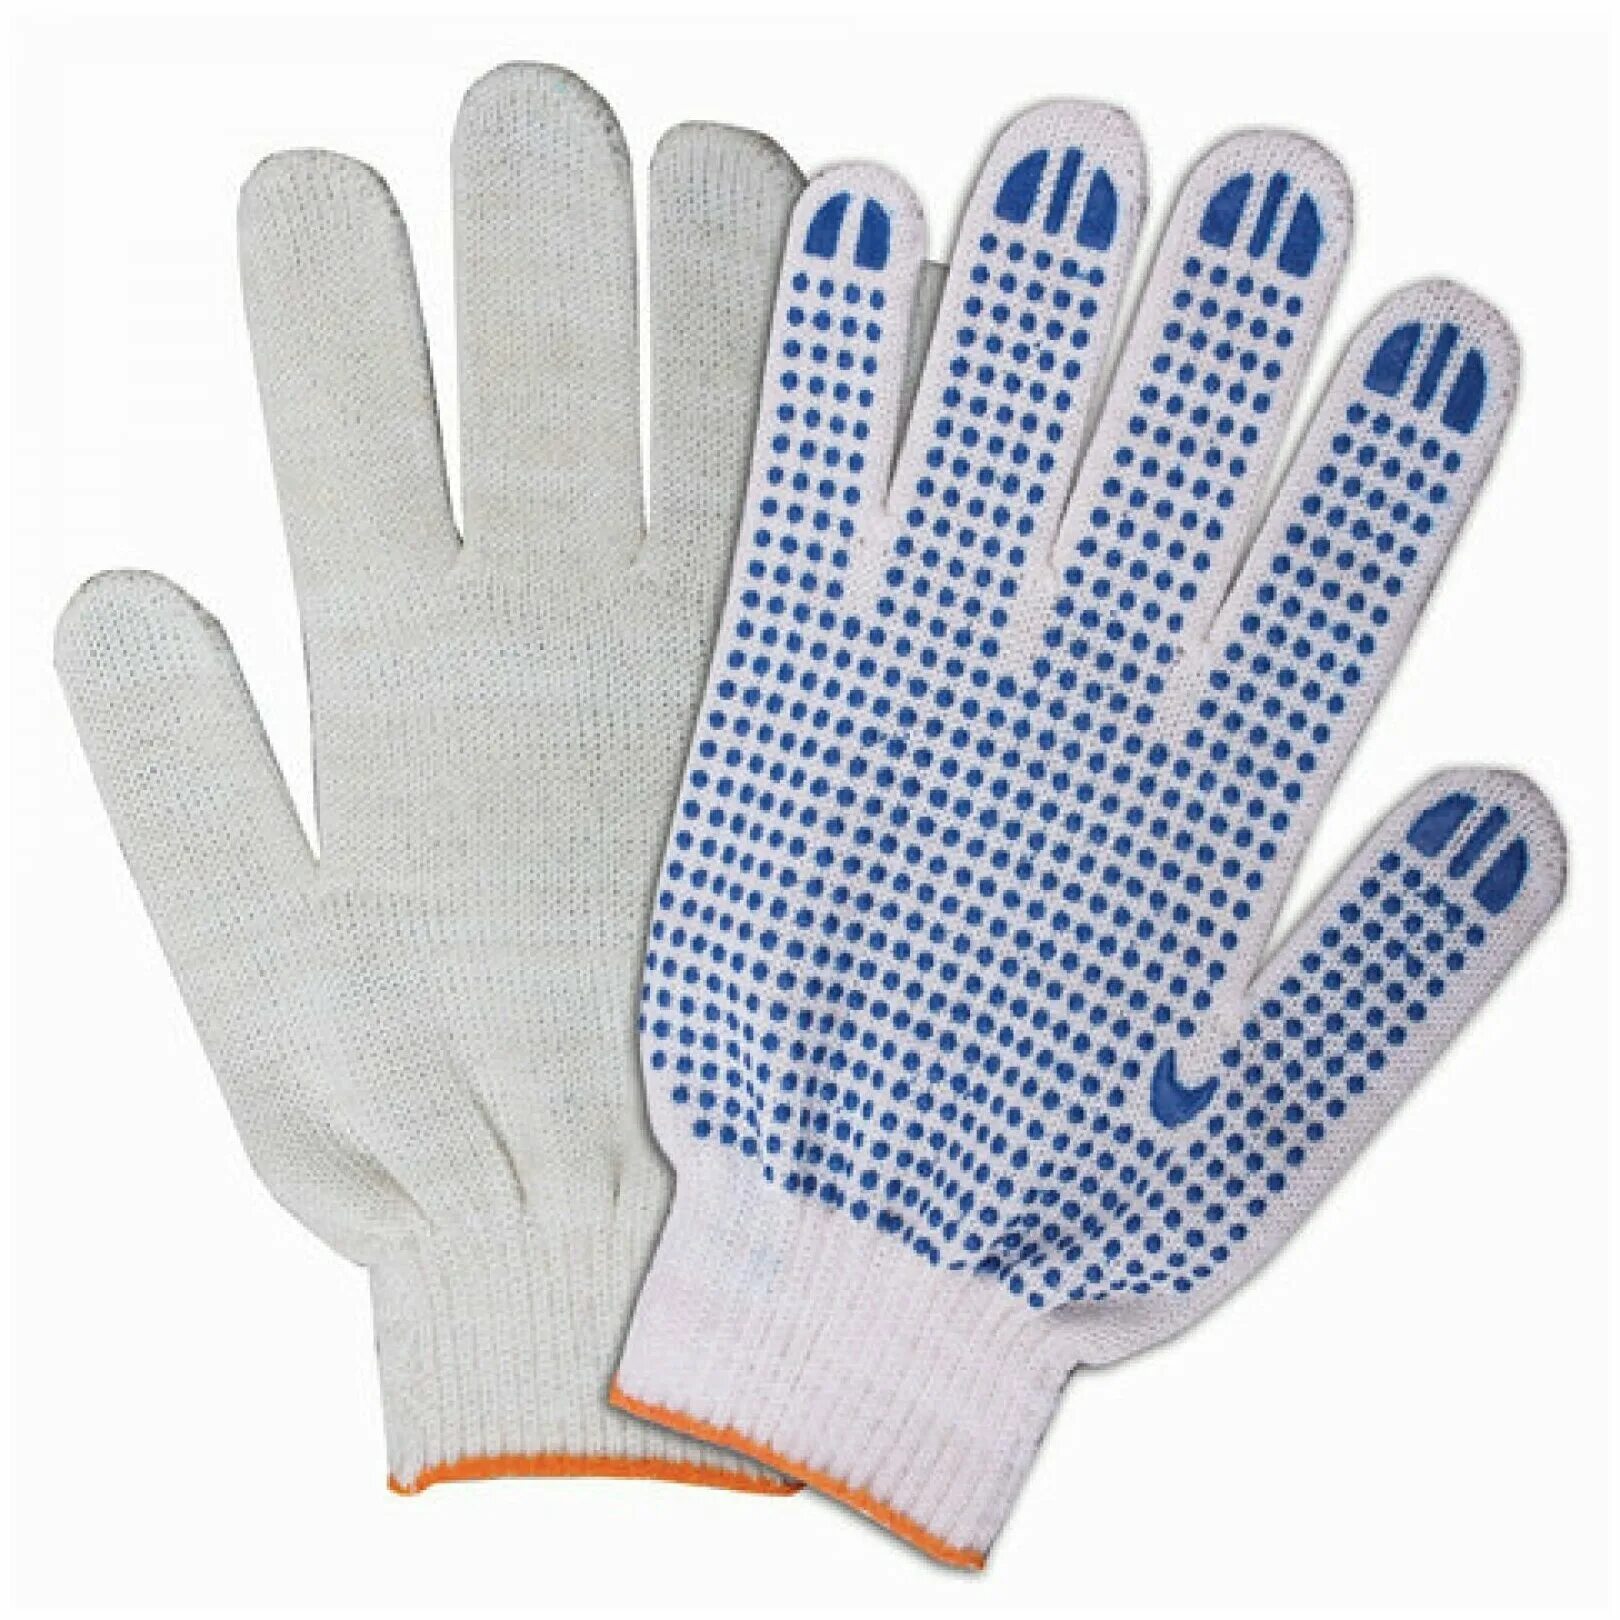 Купить перчатки х б. Перчатки итп-1 огнетермостойкие. Перчатки Винтер Люкс (WG-702).